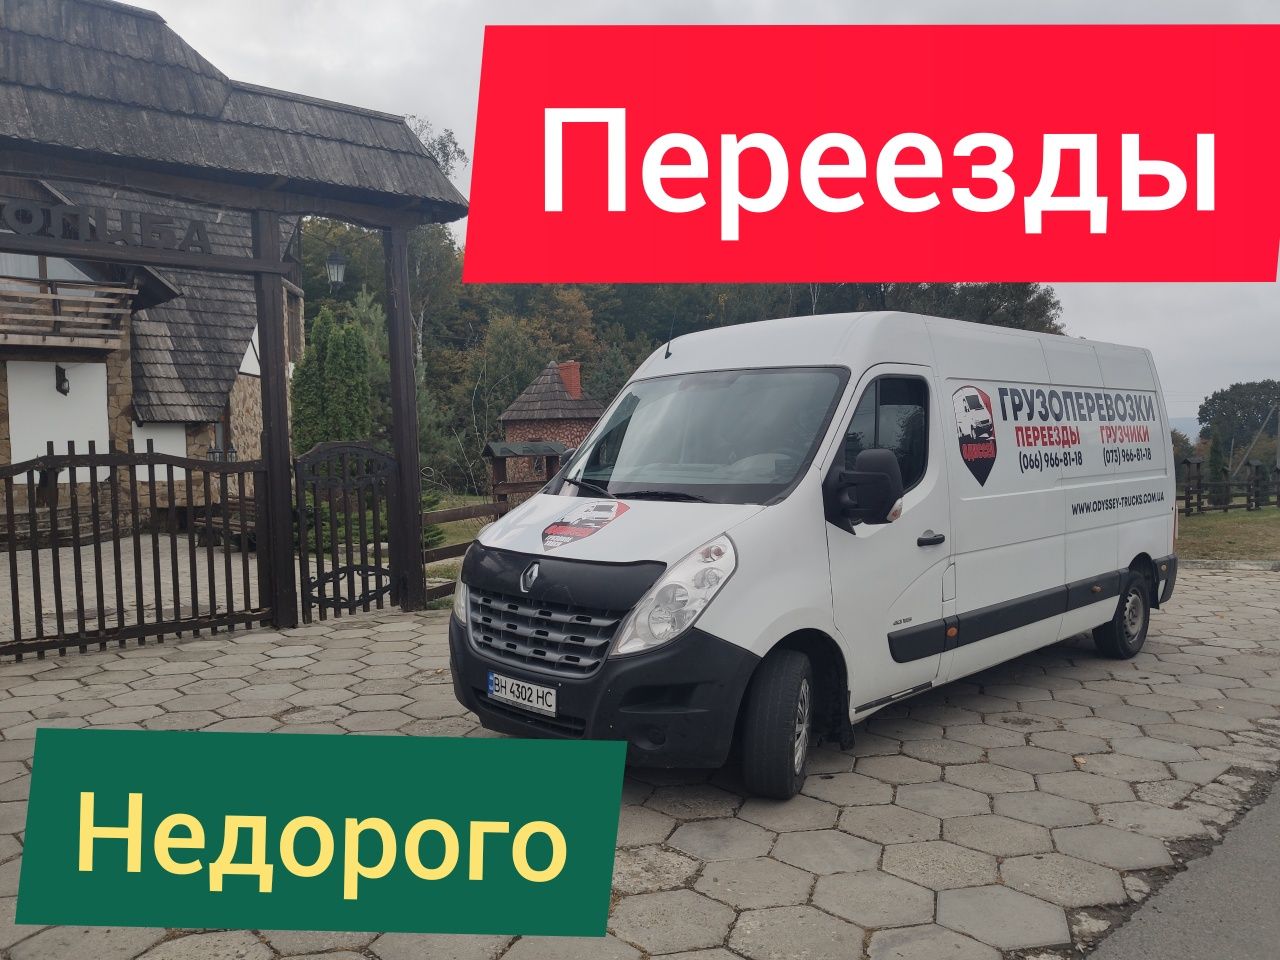 Грузовое такси Грузоперевозки переезды грузчик  Одесса Херсон Николаев